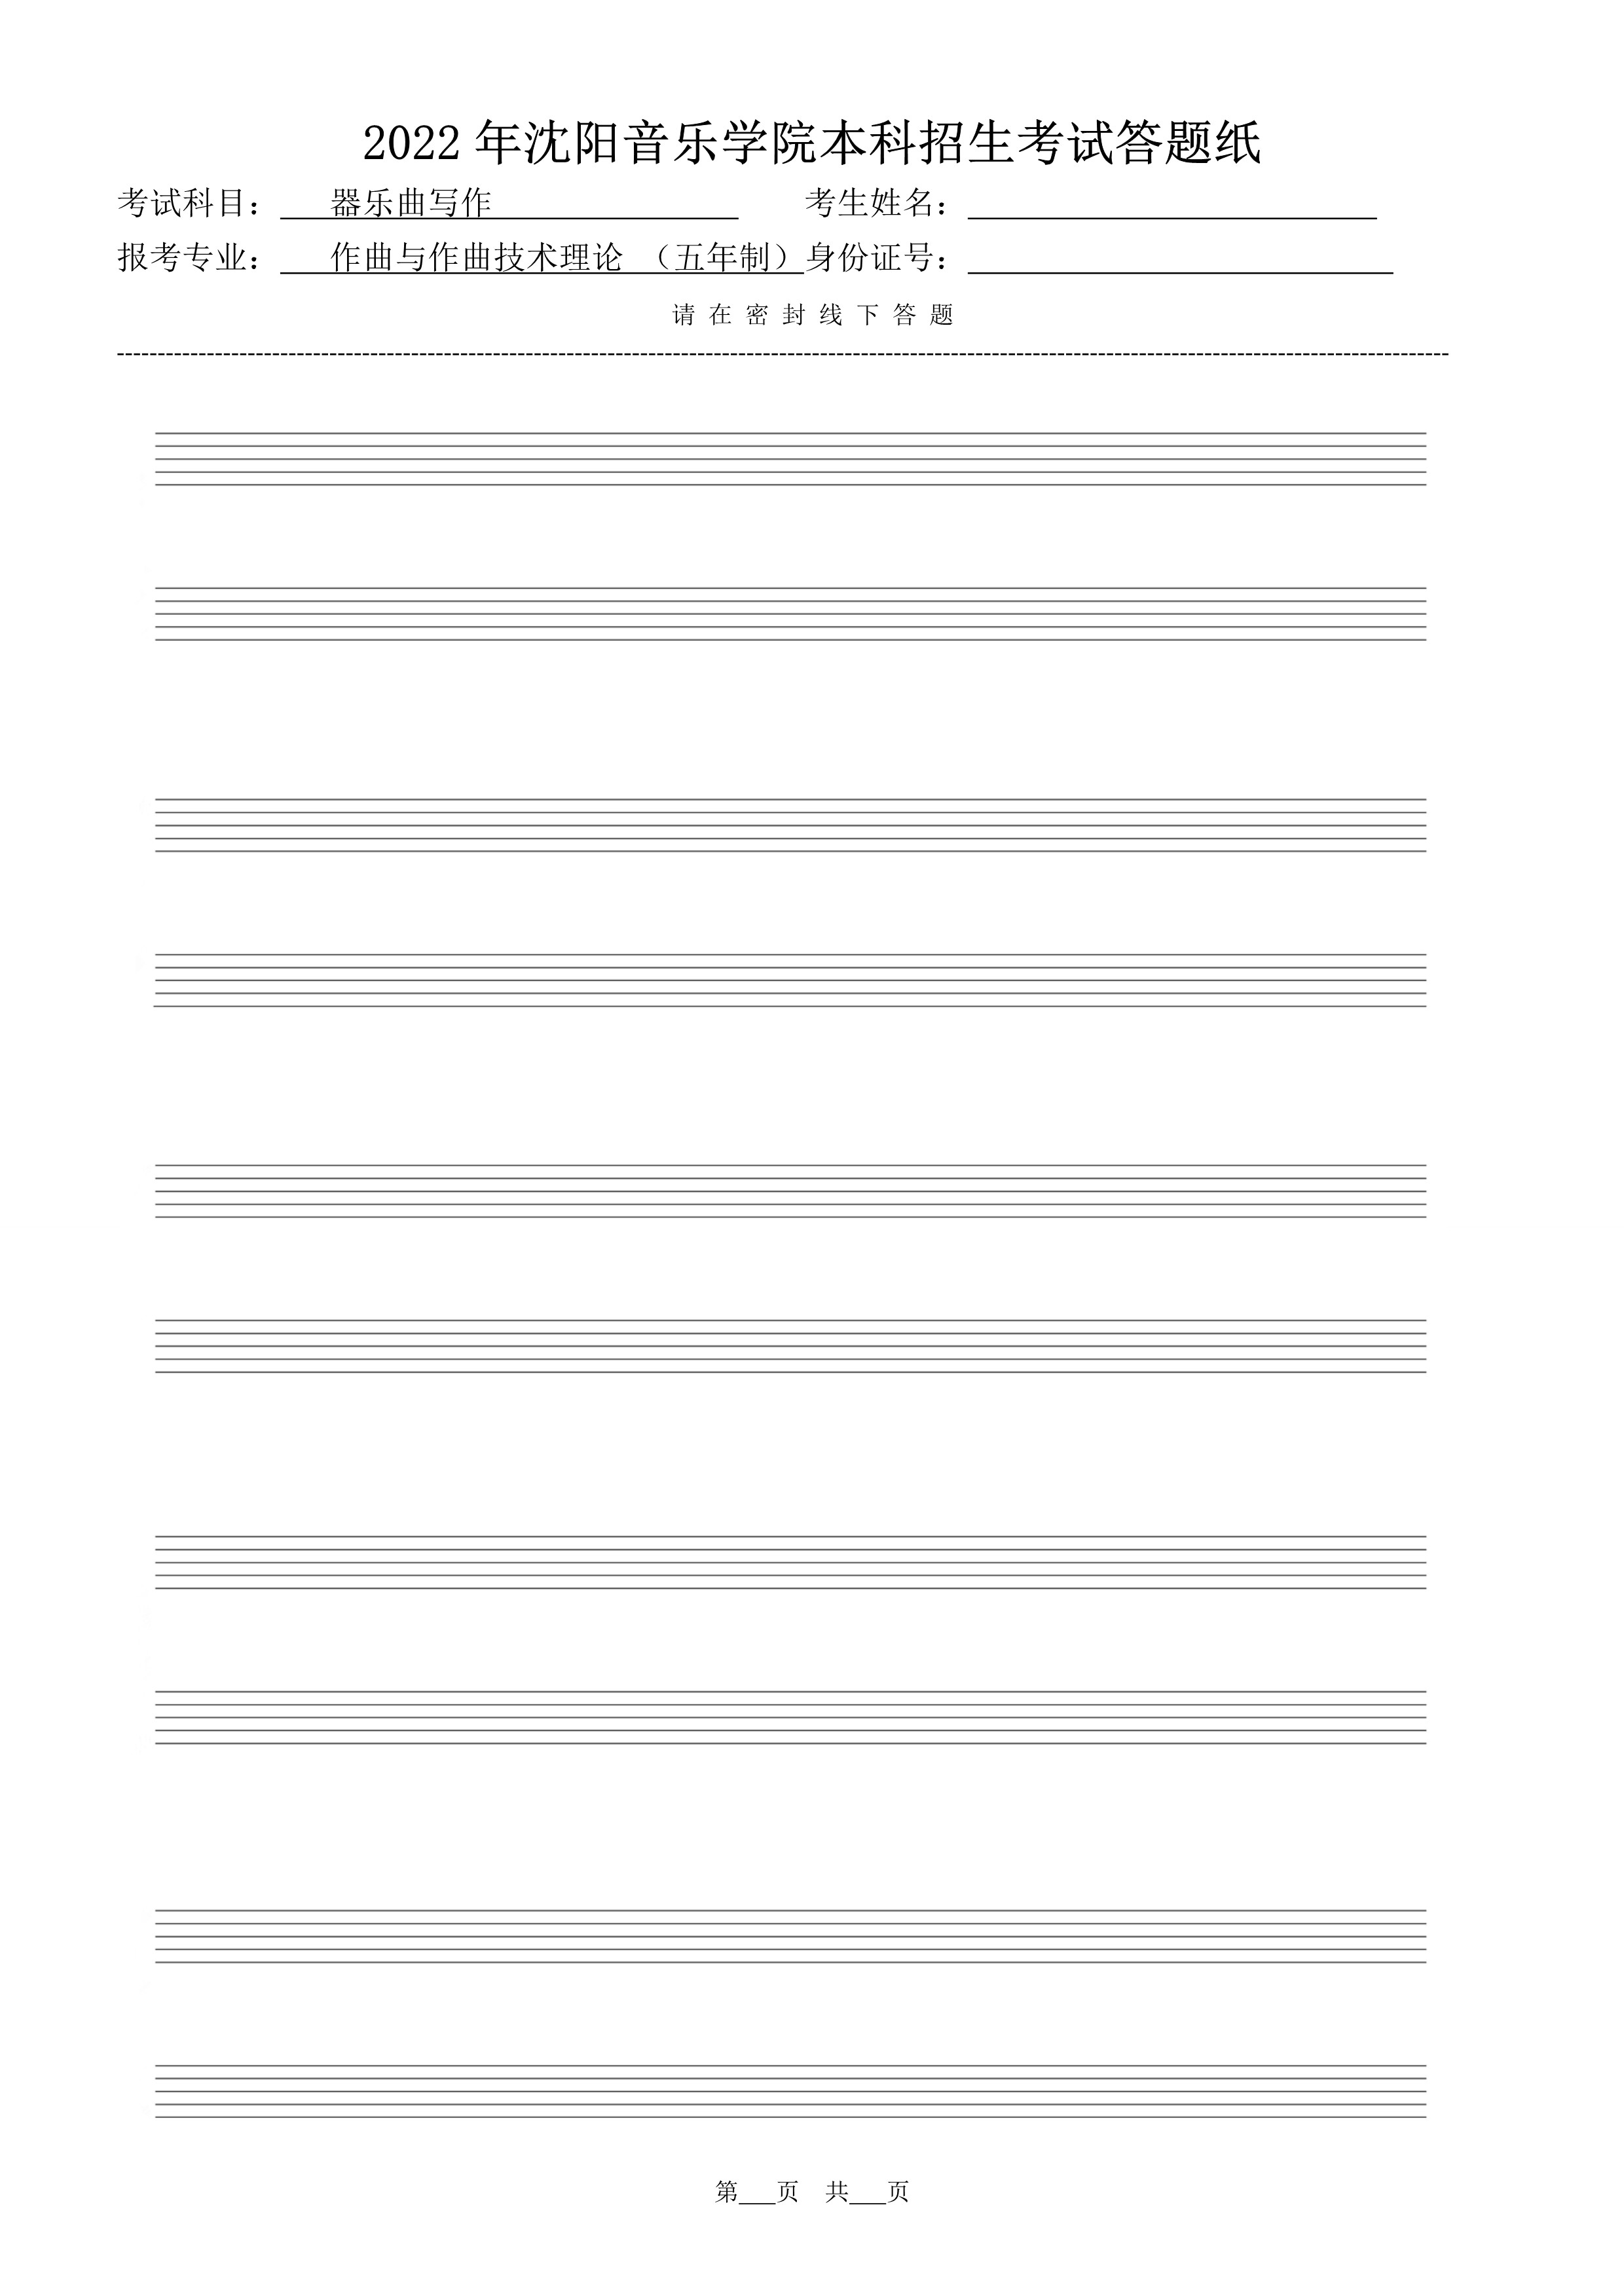 复试器乐曲写作答题纸（共10张）_5.jpg